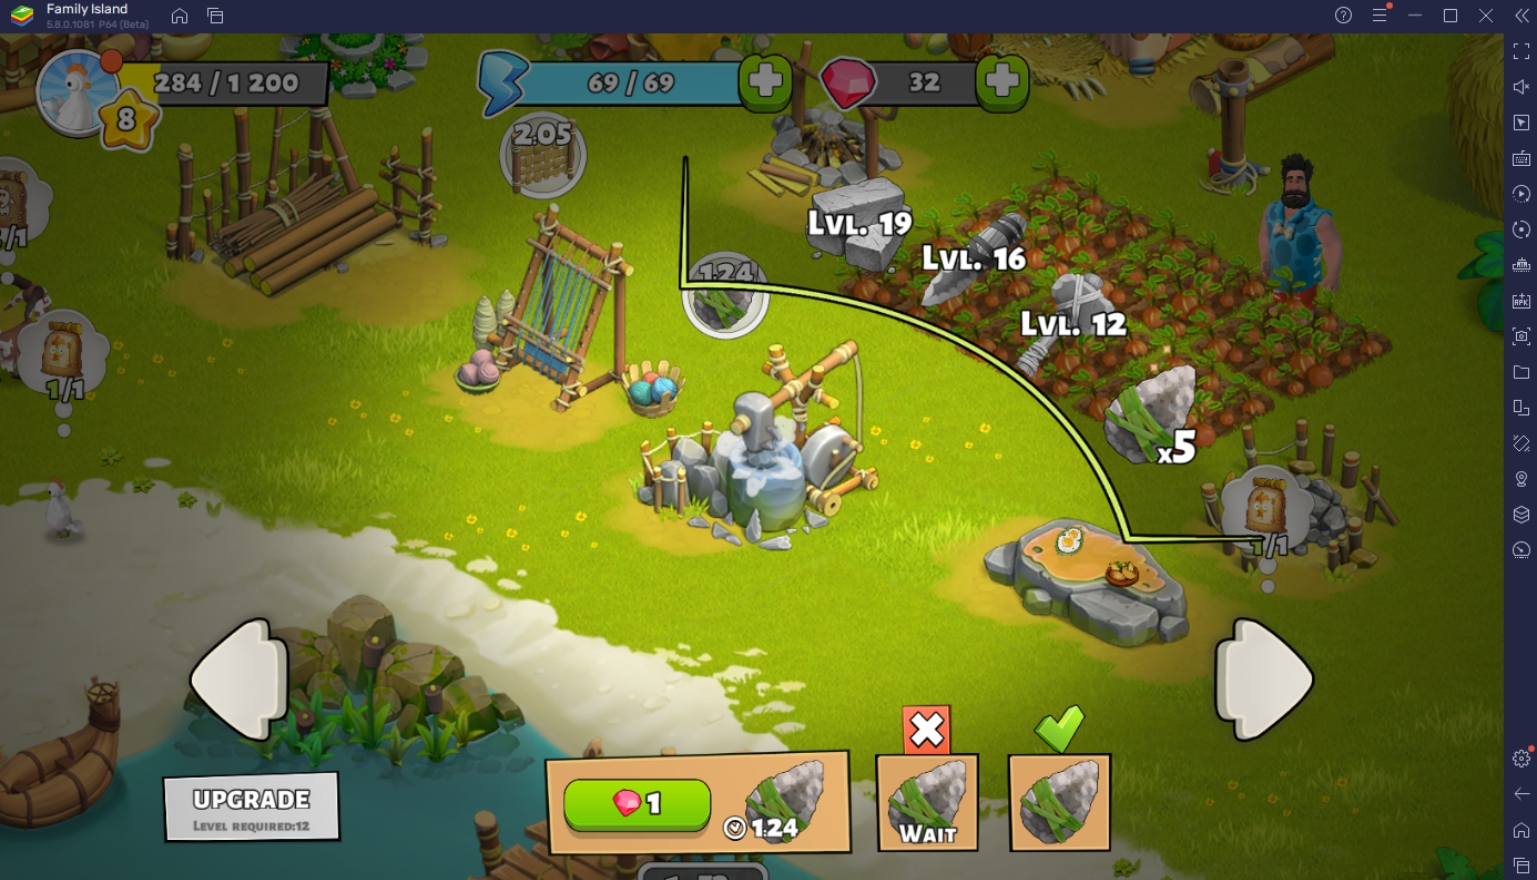 BlueStacks' Leitfaden für Einsteiger zum Spiel Family Island - Farmspiel